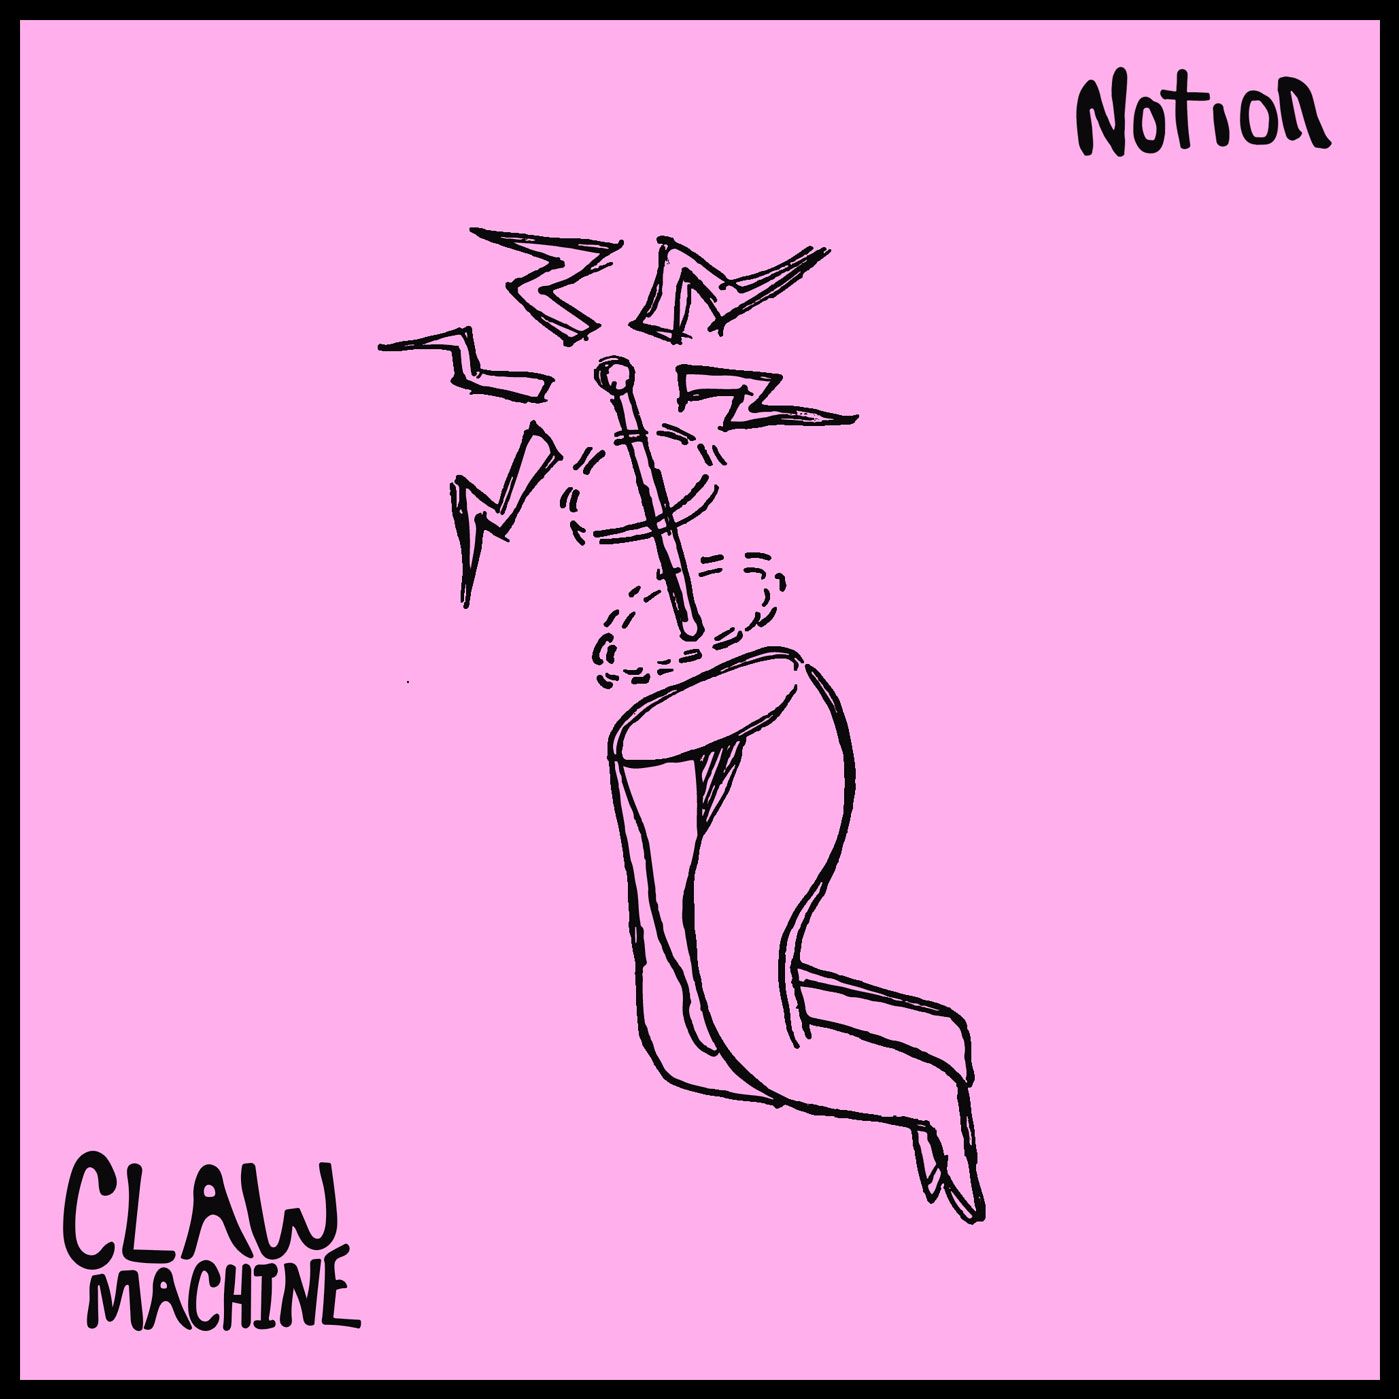 clawmachine – “Notion”